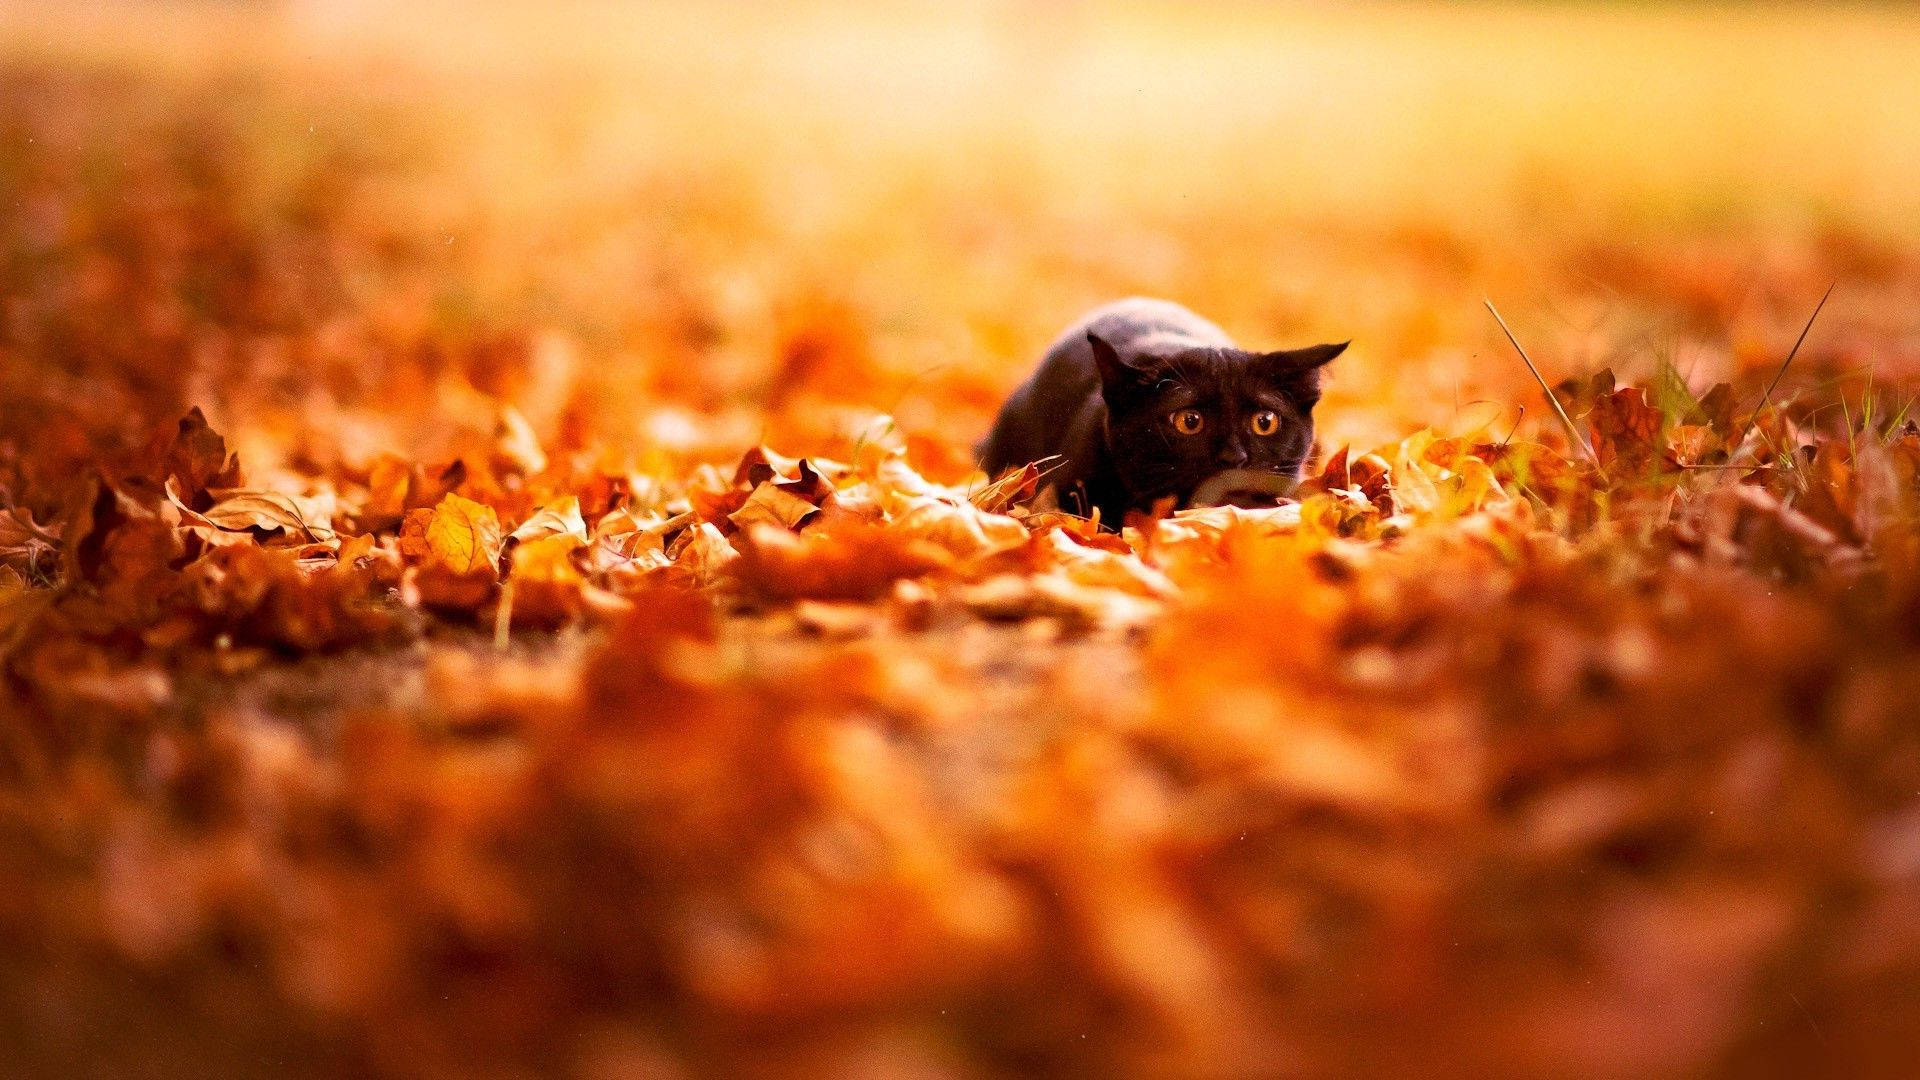 Download Black Cat In Fall Season Wallpaper | Wallpapers.com